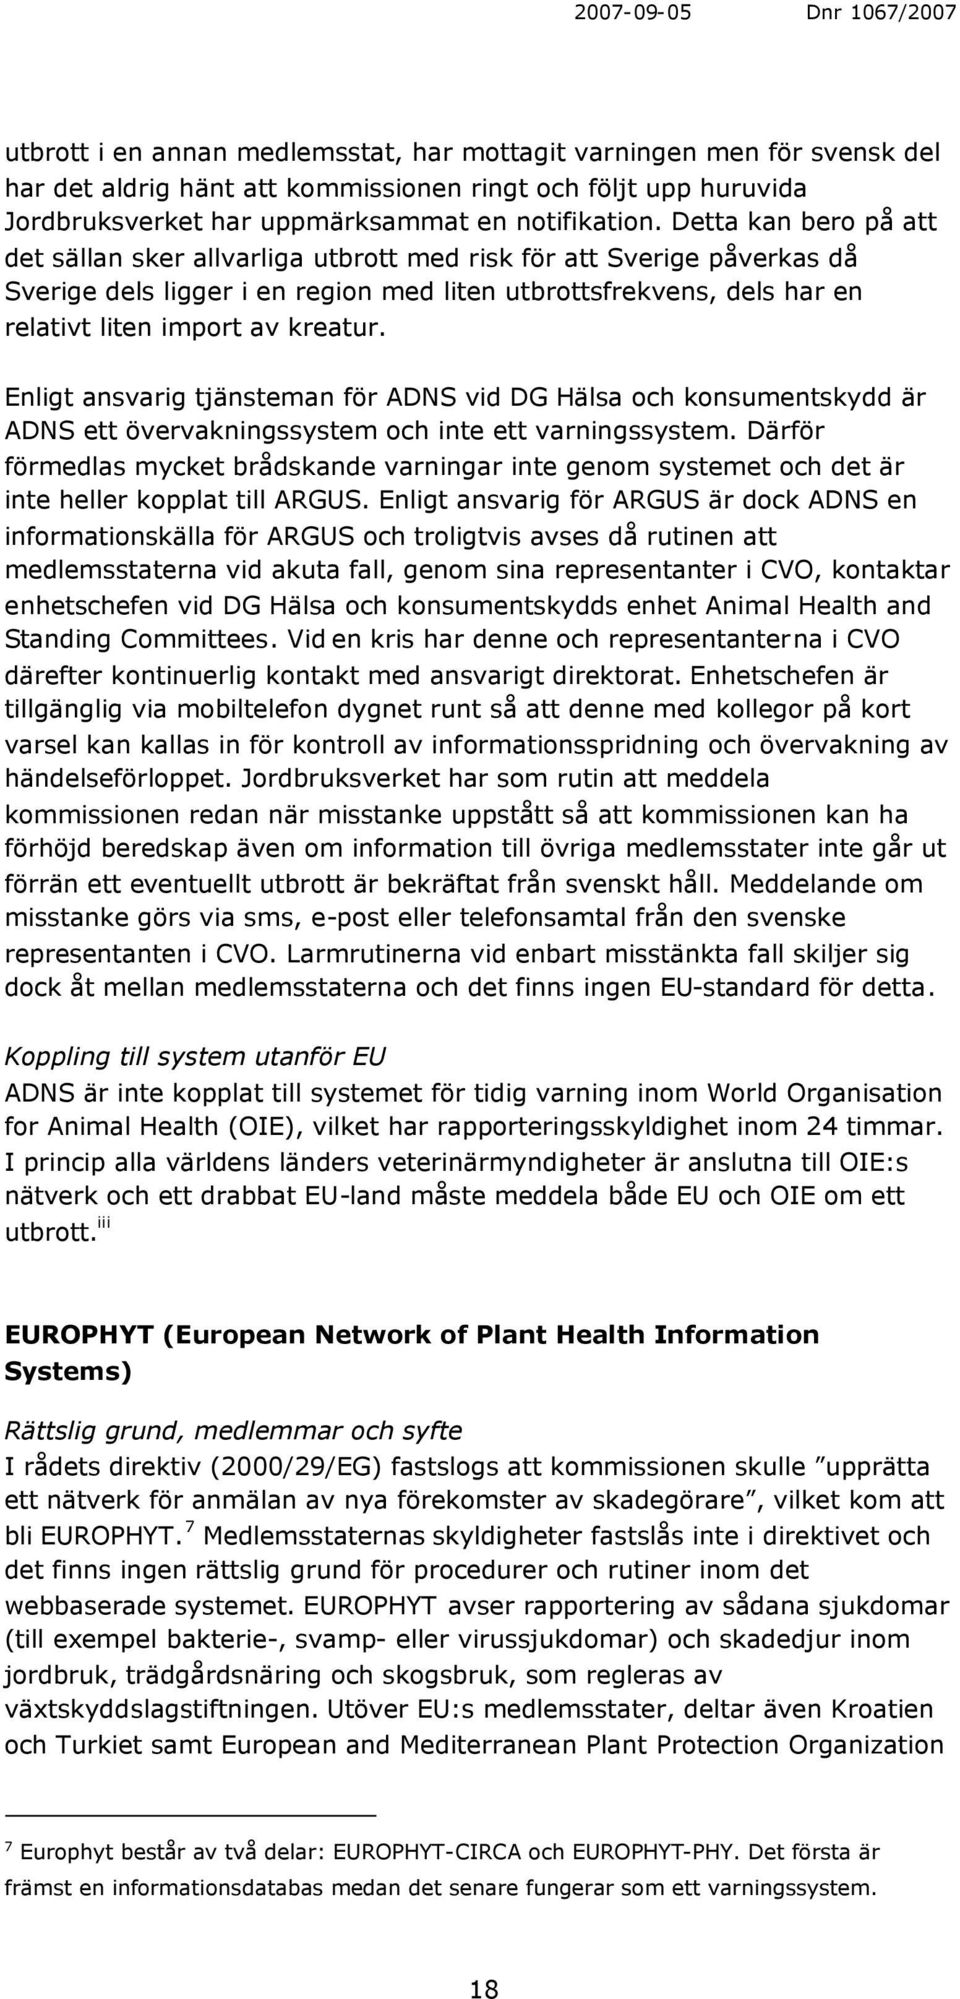 Enligt ansvarig tjänsteman för ADNS vid DG Hälsa och konsumentskydd är ADNS ett övervakningssystem och inte ett varningssystem.